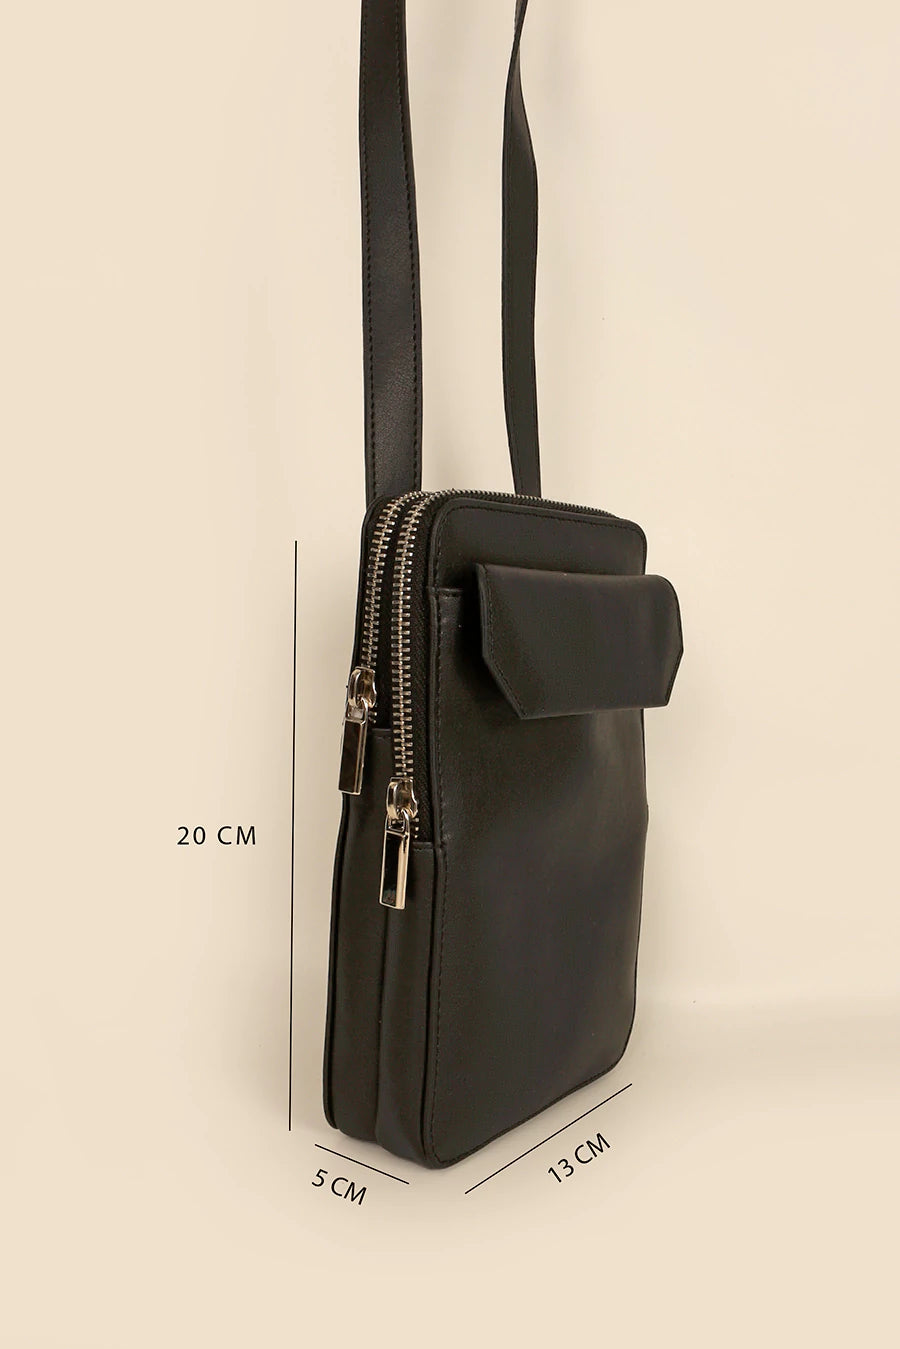 Vegan Leather Vertical Mobile Bag Vanta Black Measurement 